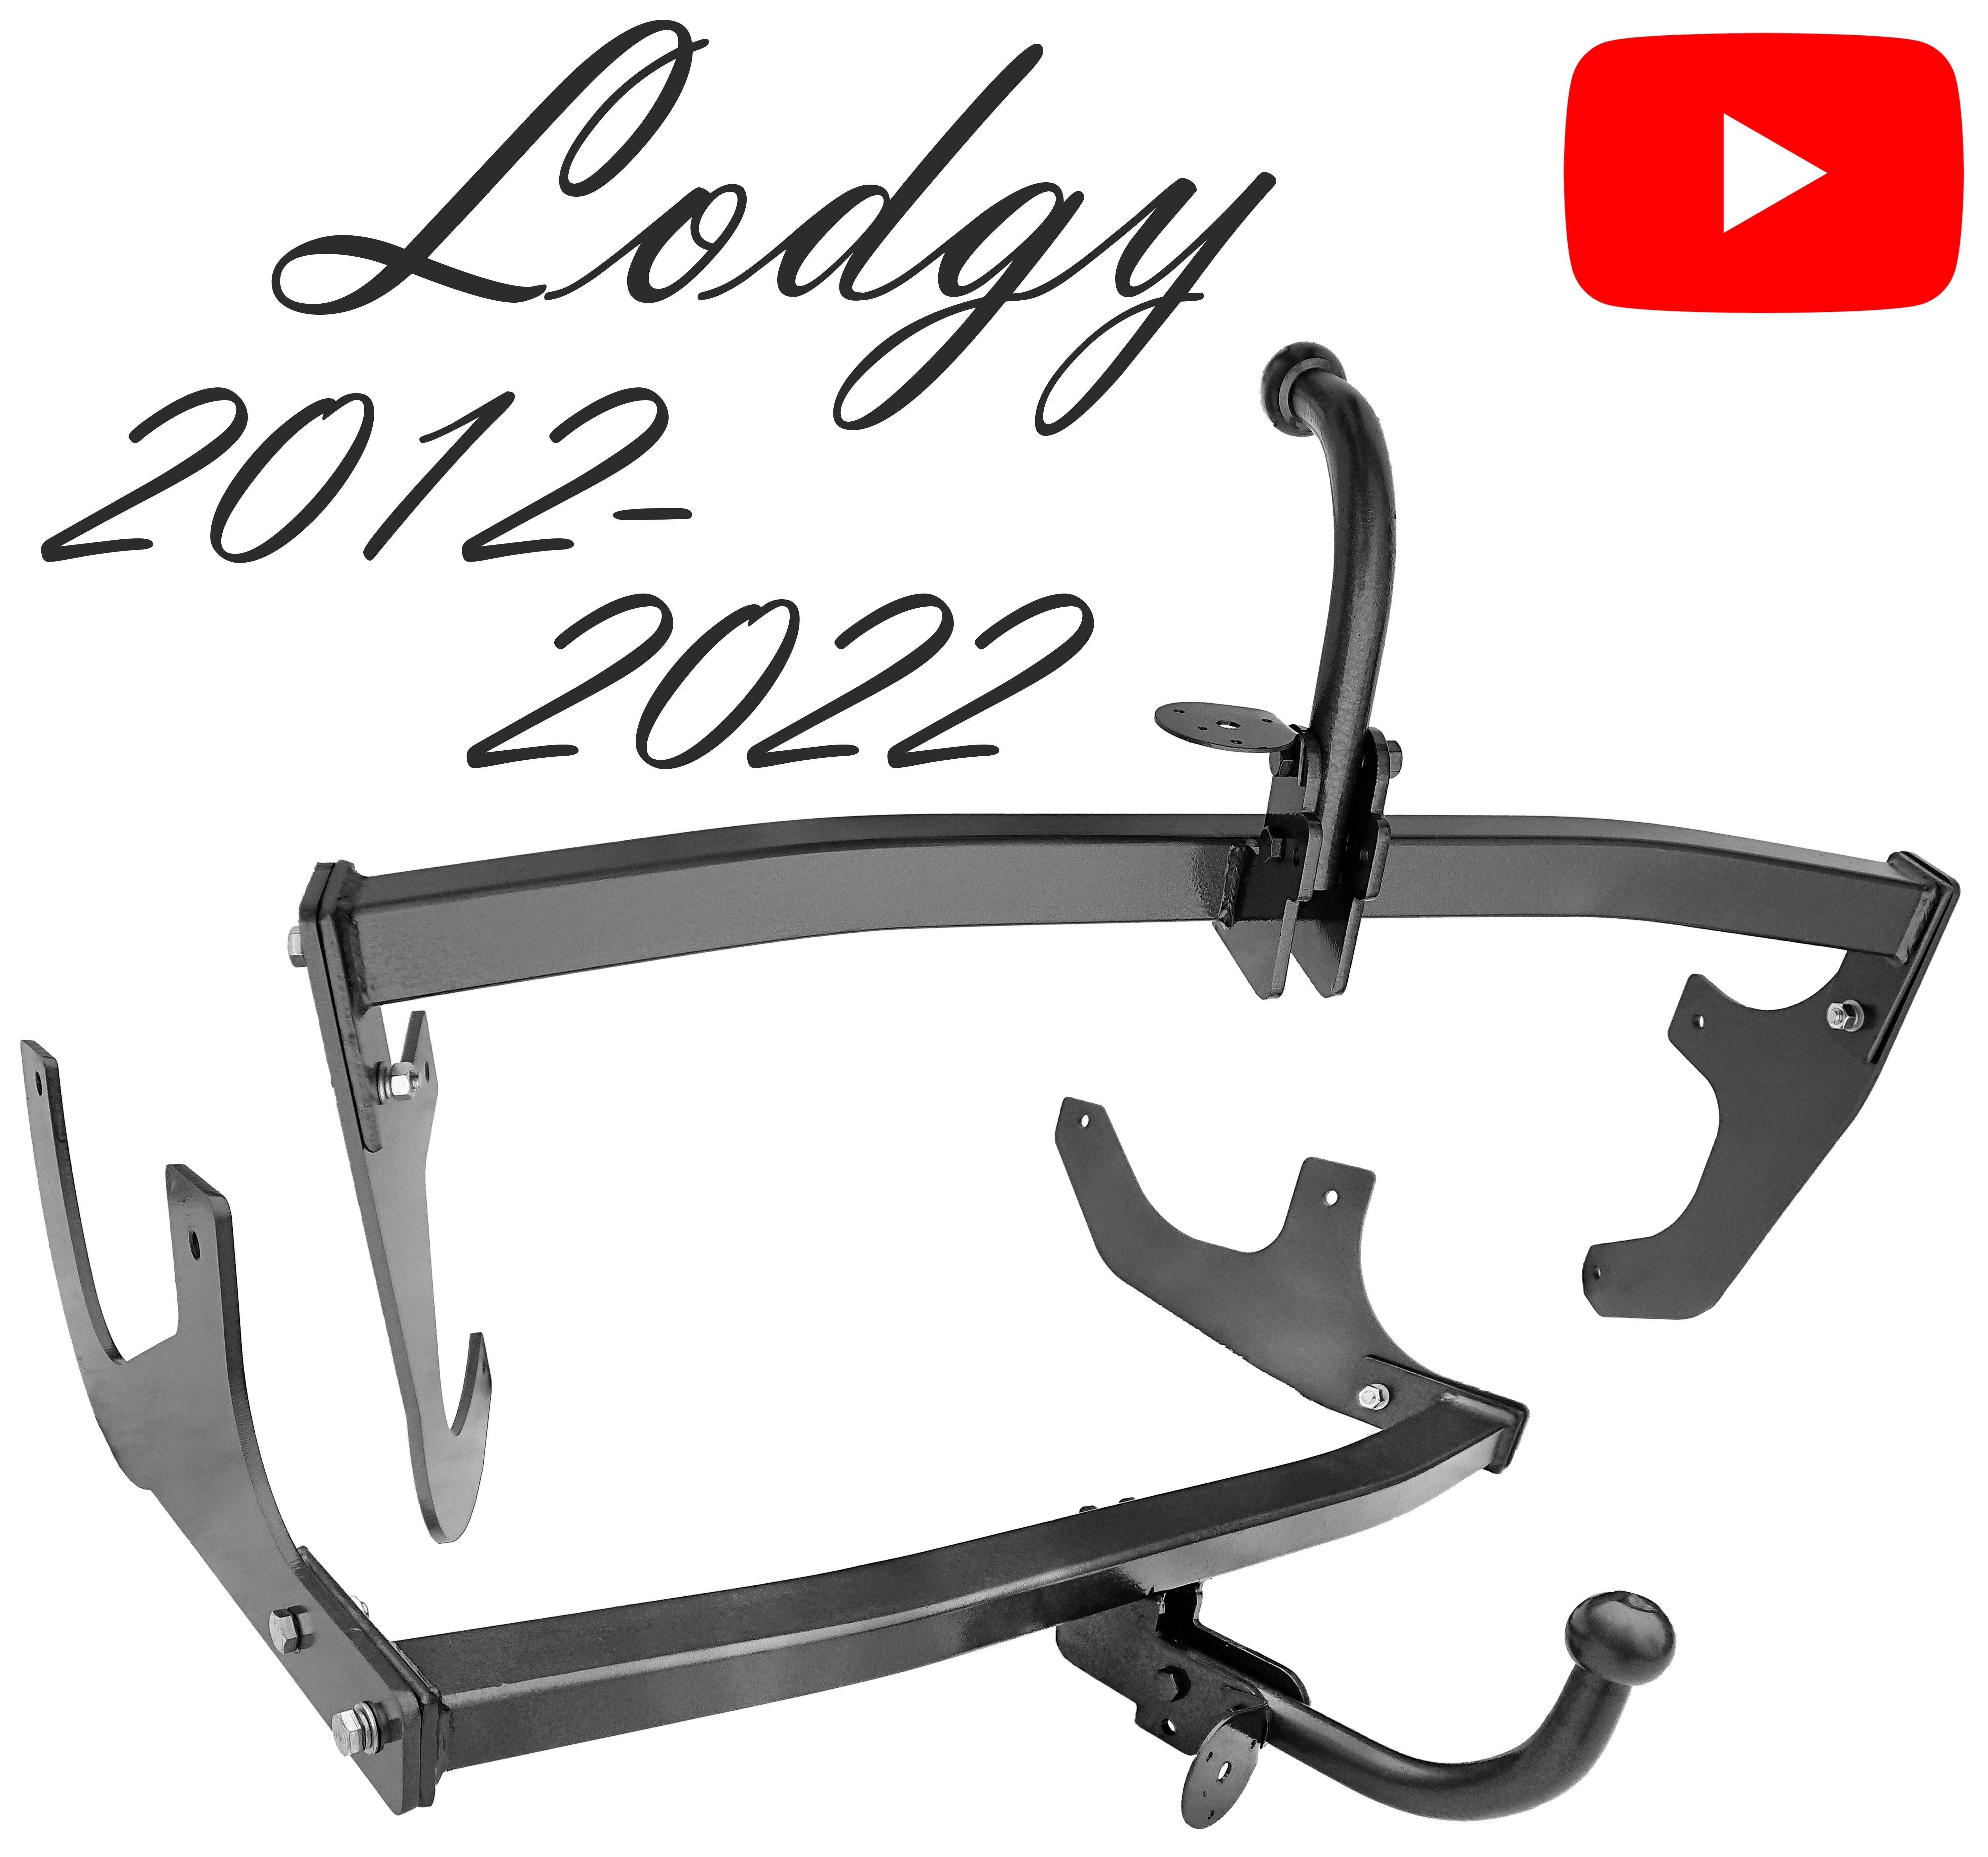 Фаркоп Дачия Лоджи Рено Лоджи Dacia Lodgy 2012-2022